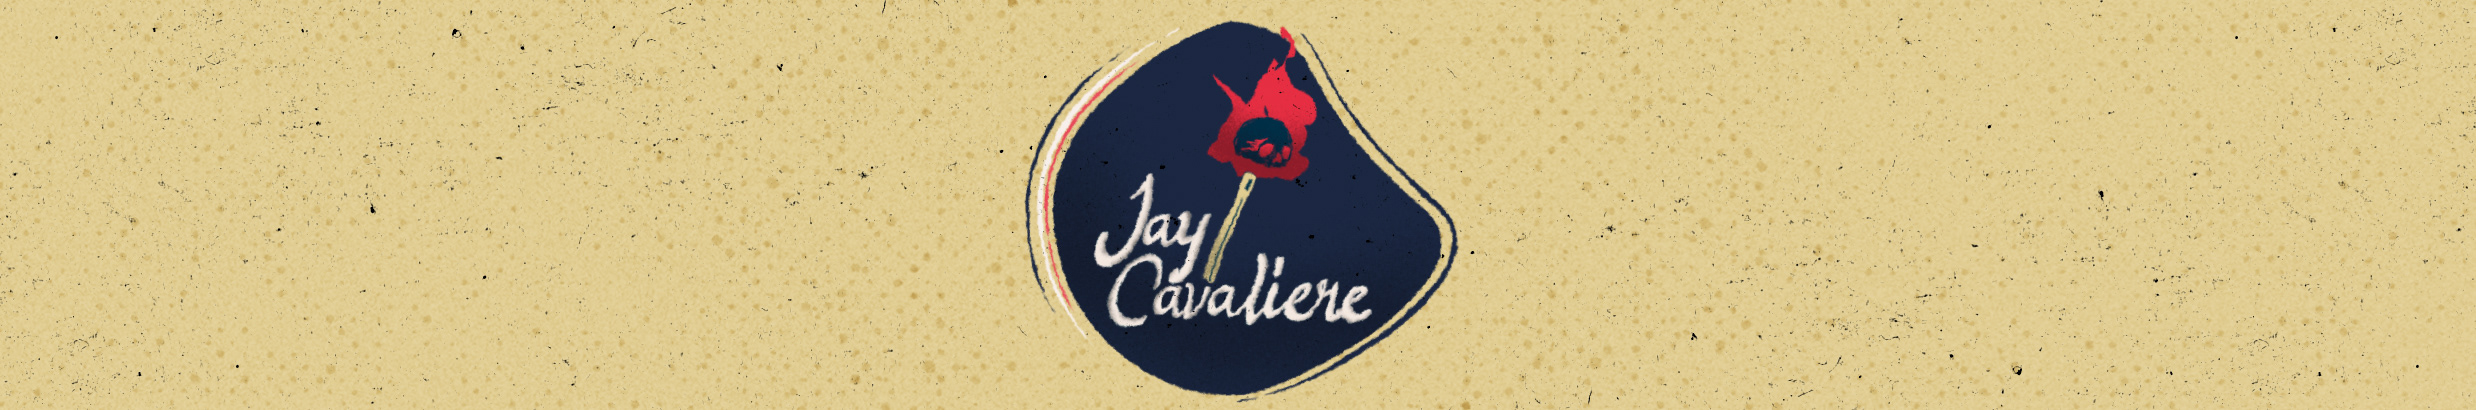 Jay Cavaliere のプロファイルバナー